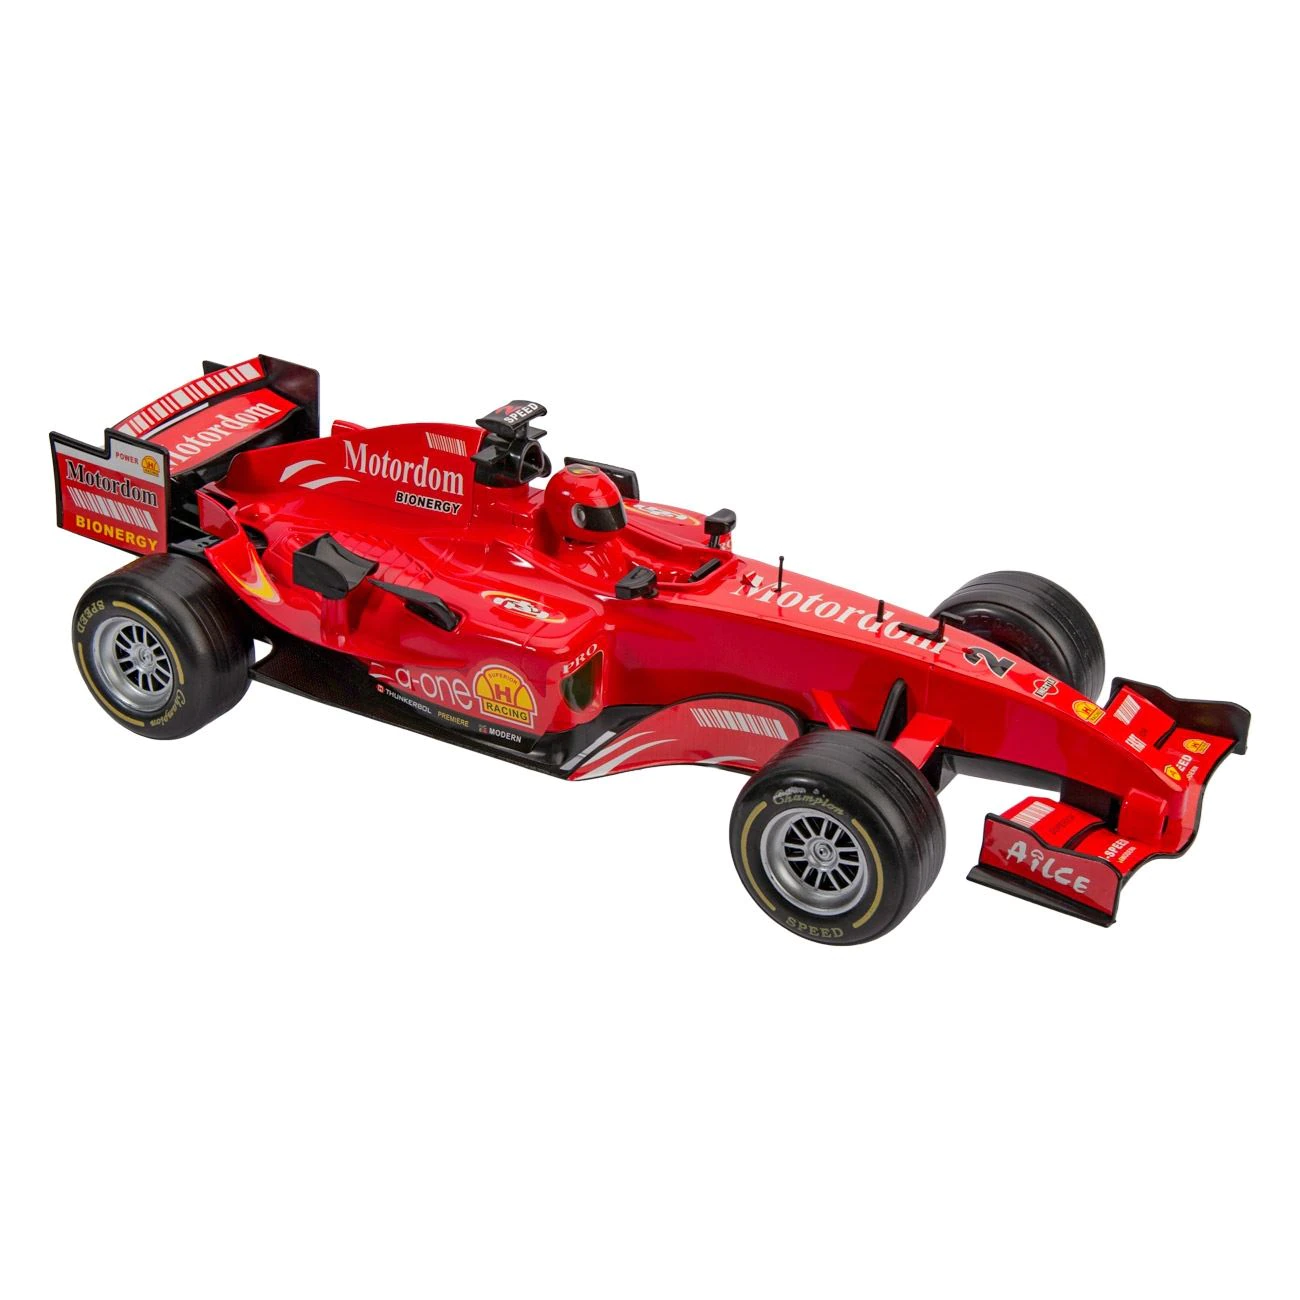 Masina pentru copii Formula 1 Motordom, 44 x 22 x 13 cm, Rosu [1]